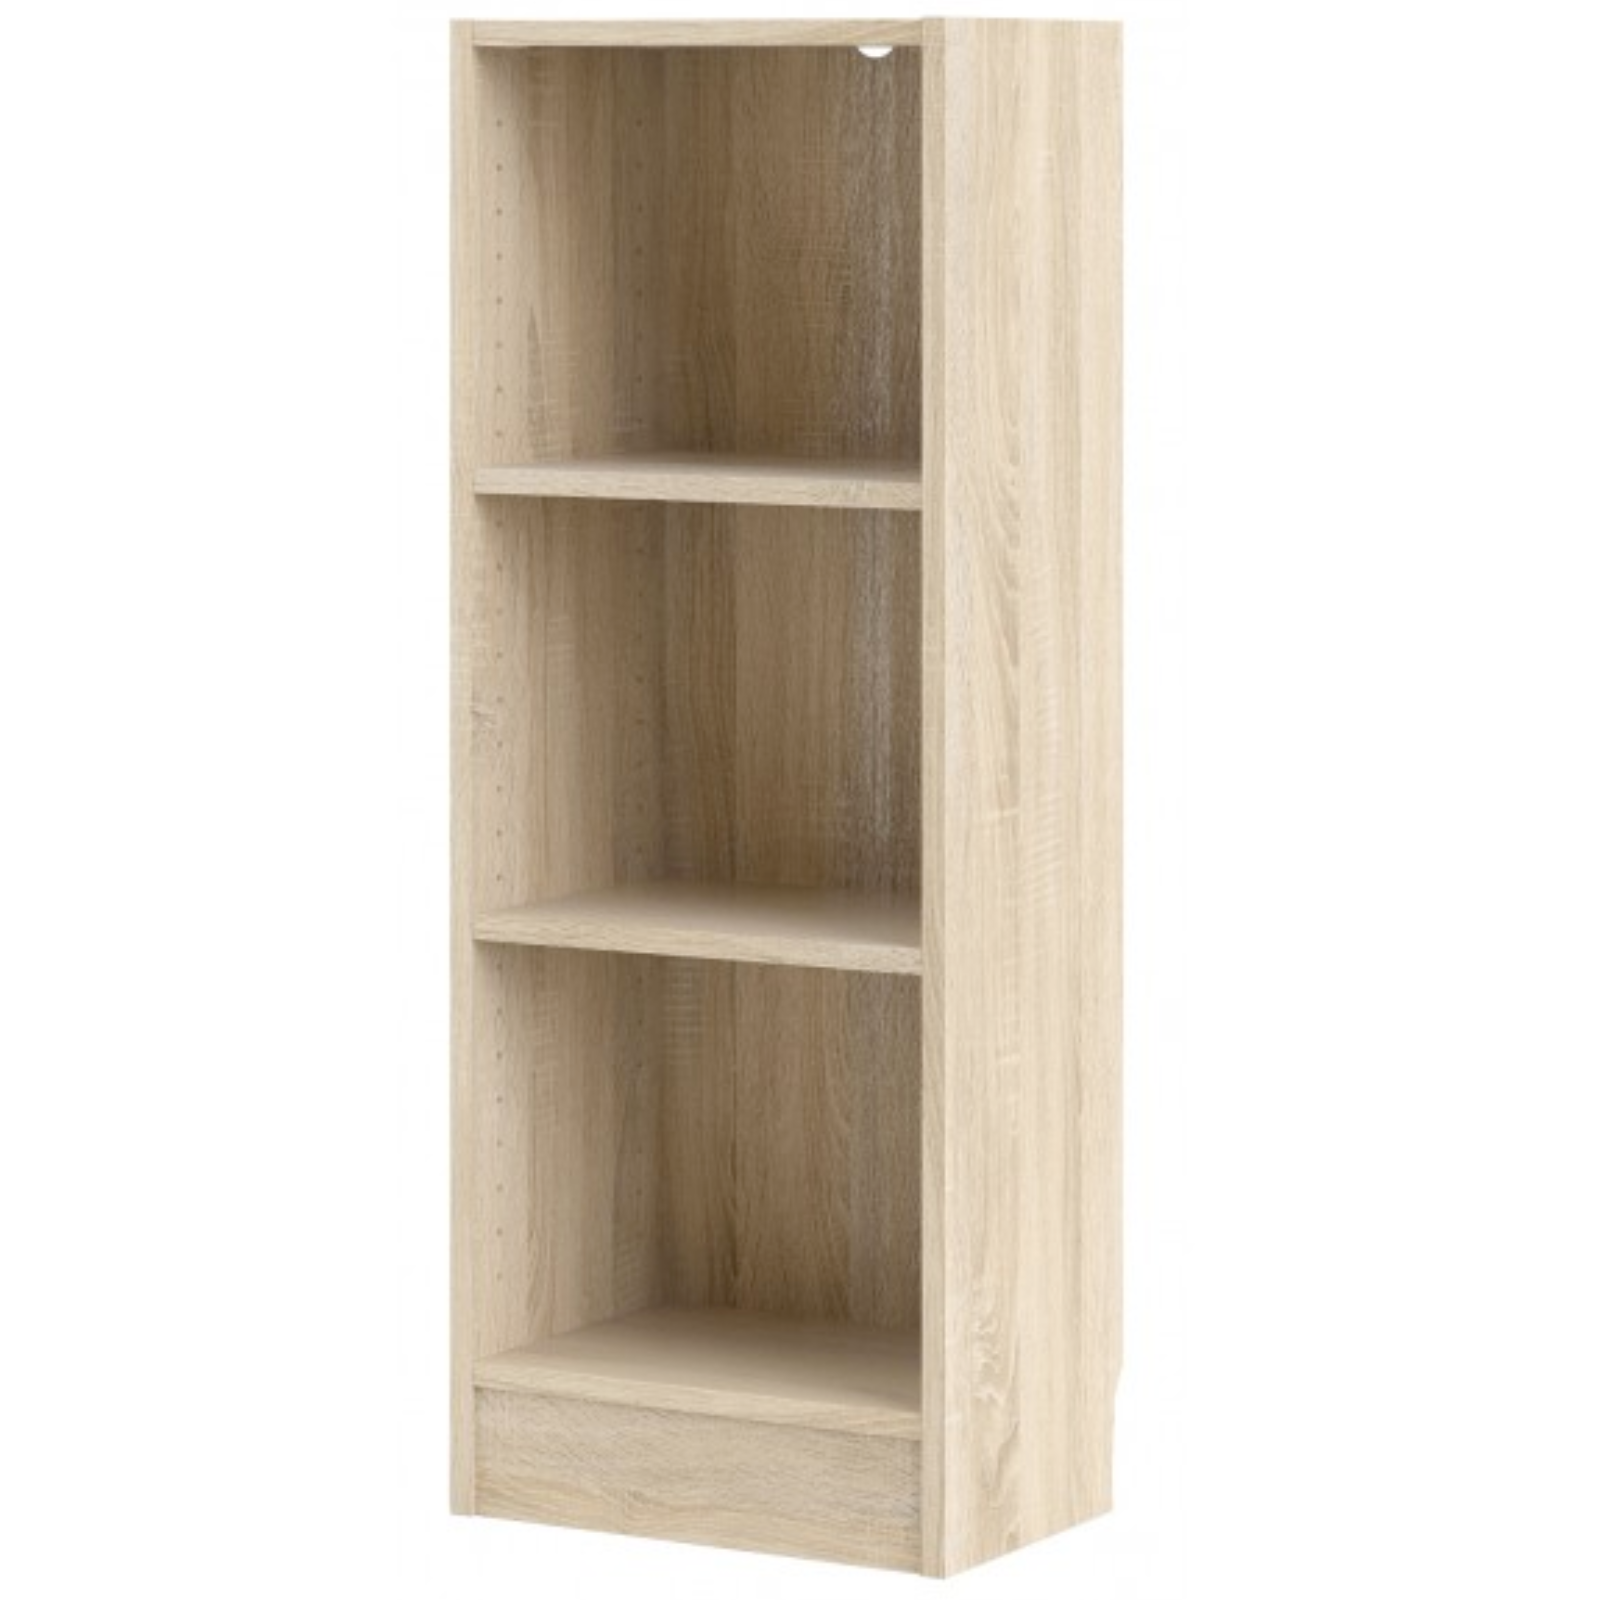 Libreria in legno "Eco" rovere chiaro bassa design moderno con 3 ripiani da cameretta o ufficio